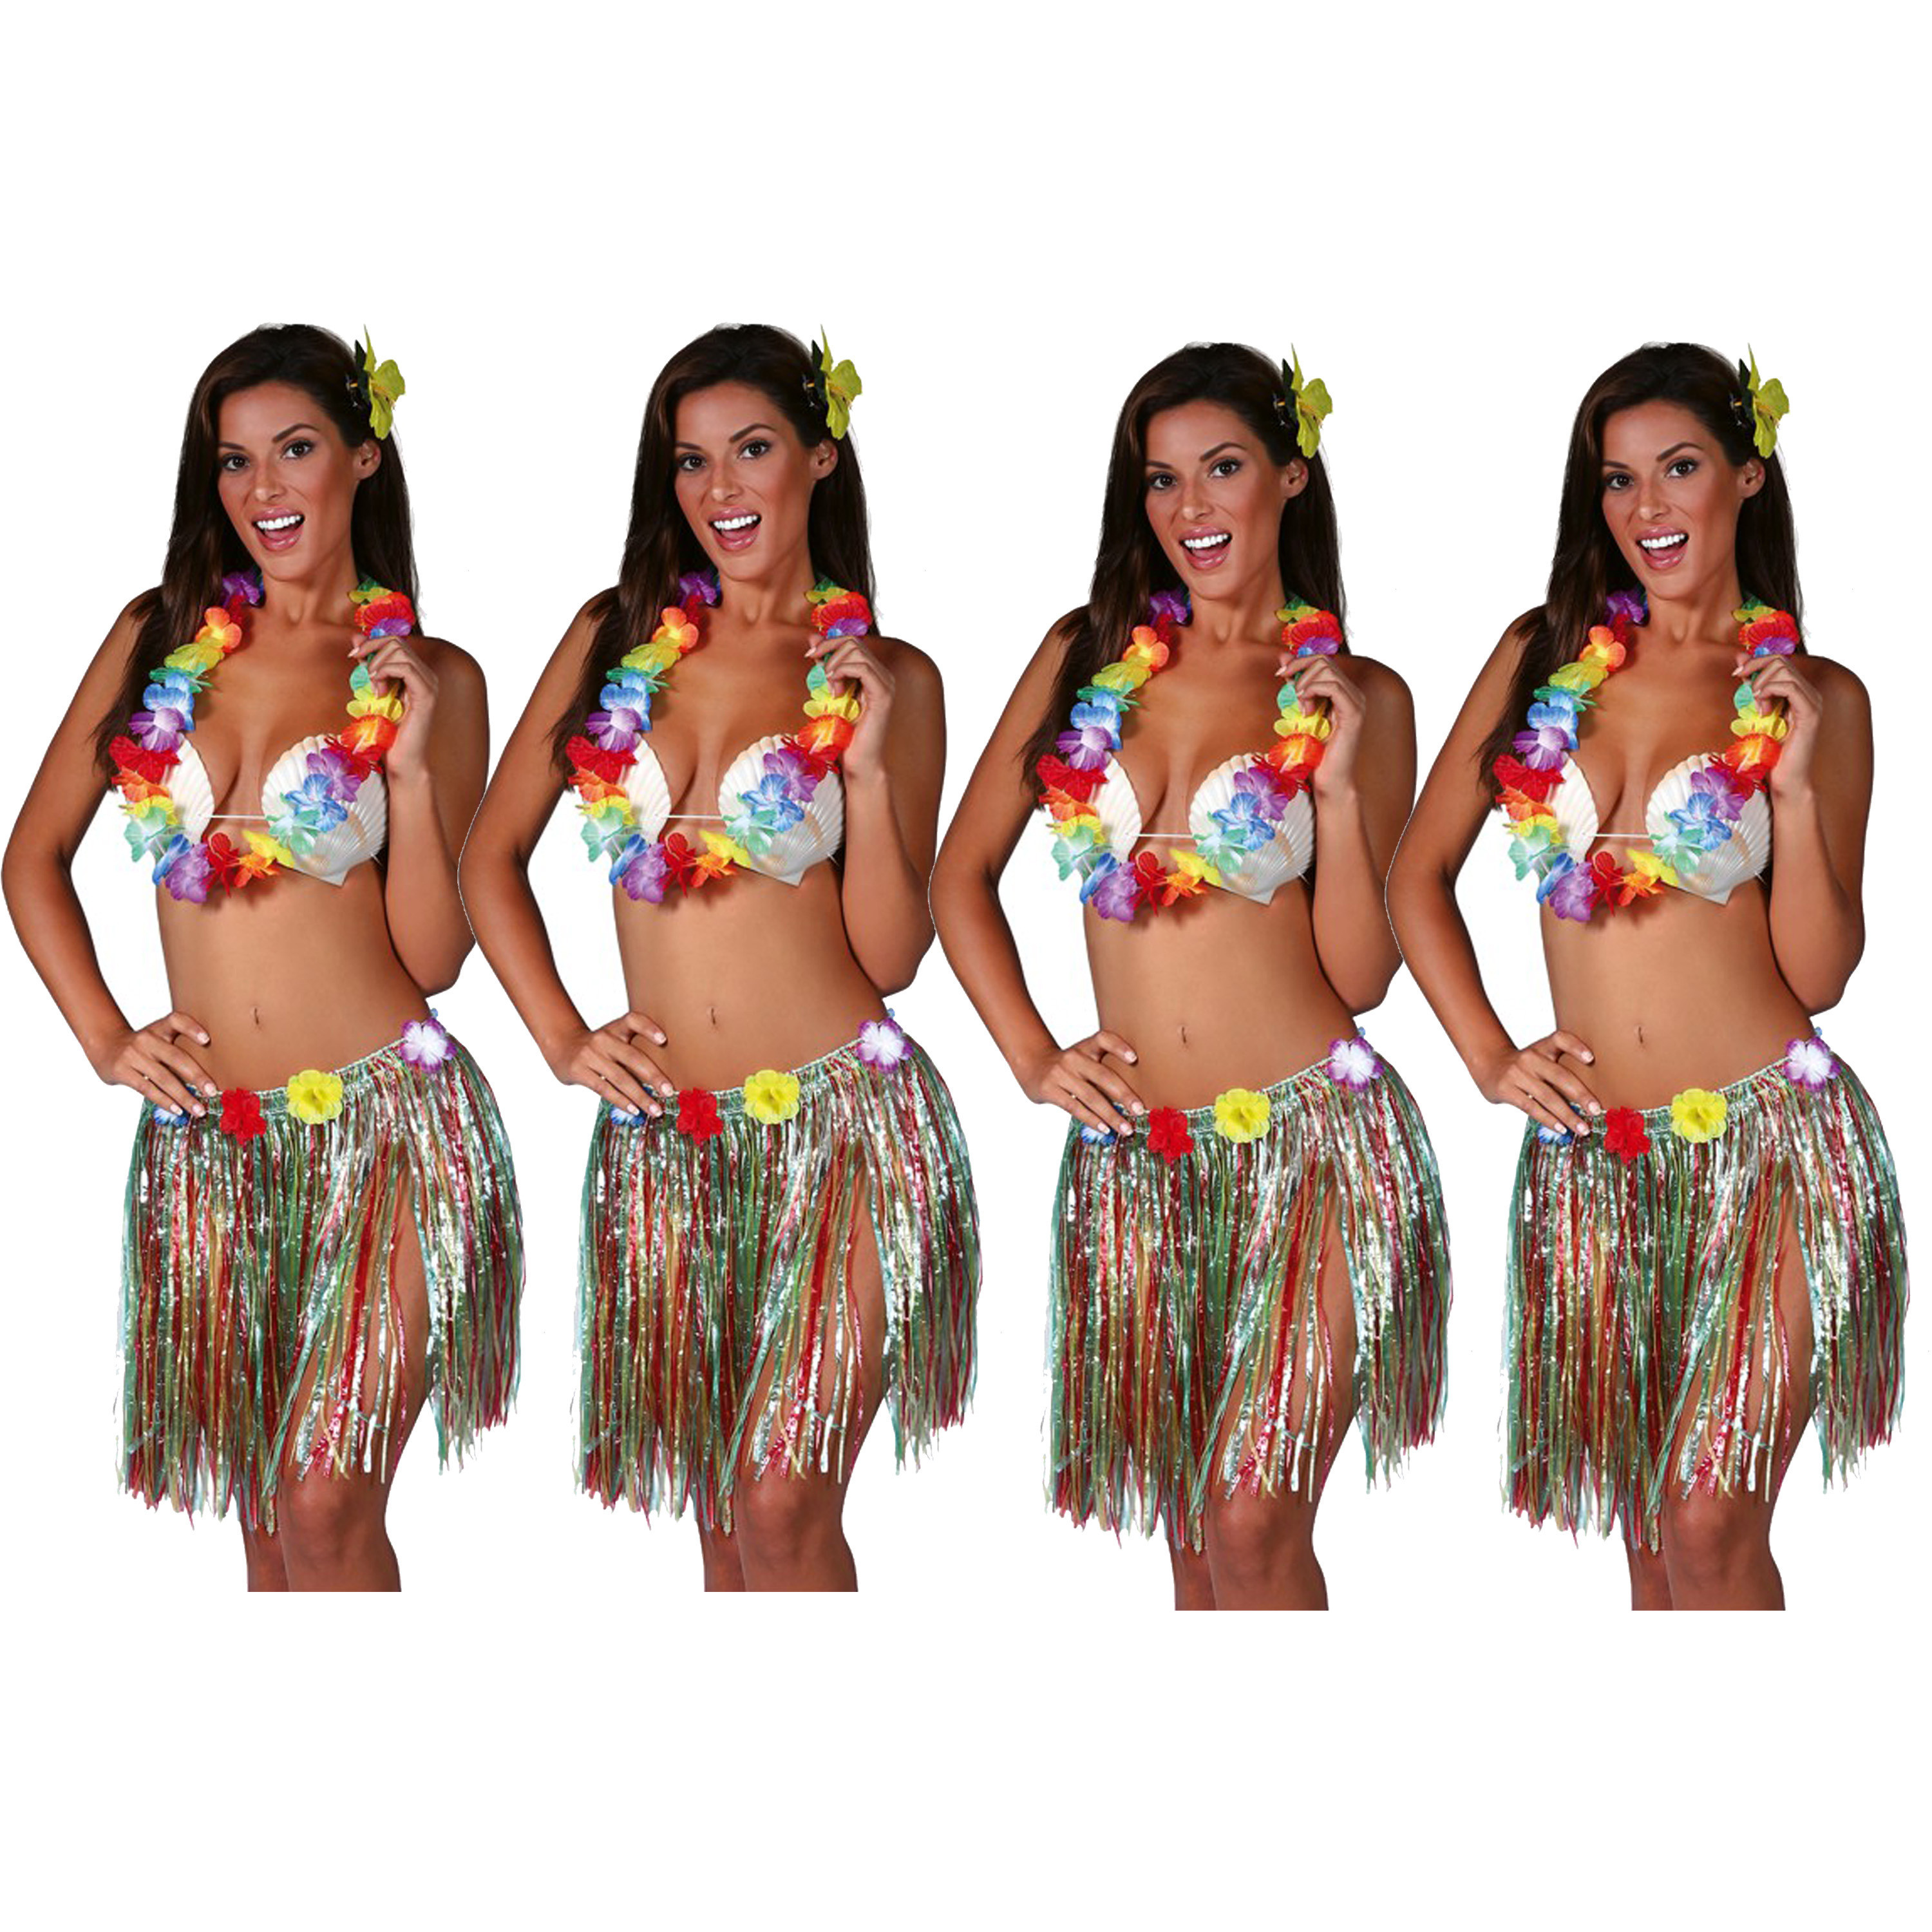 Hawaii verkleed set - 4x - voor volwassenen - multicolour - rieten rokje/bloemenkrans/haarclip bloem